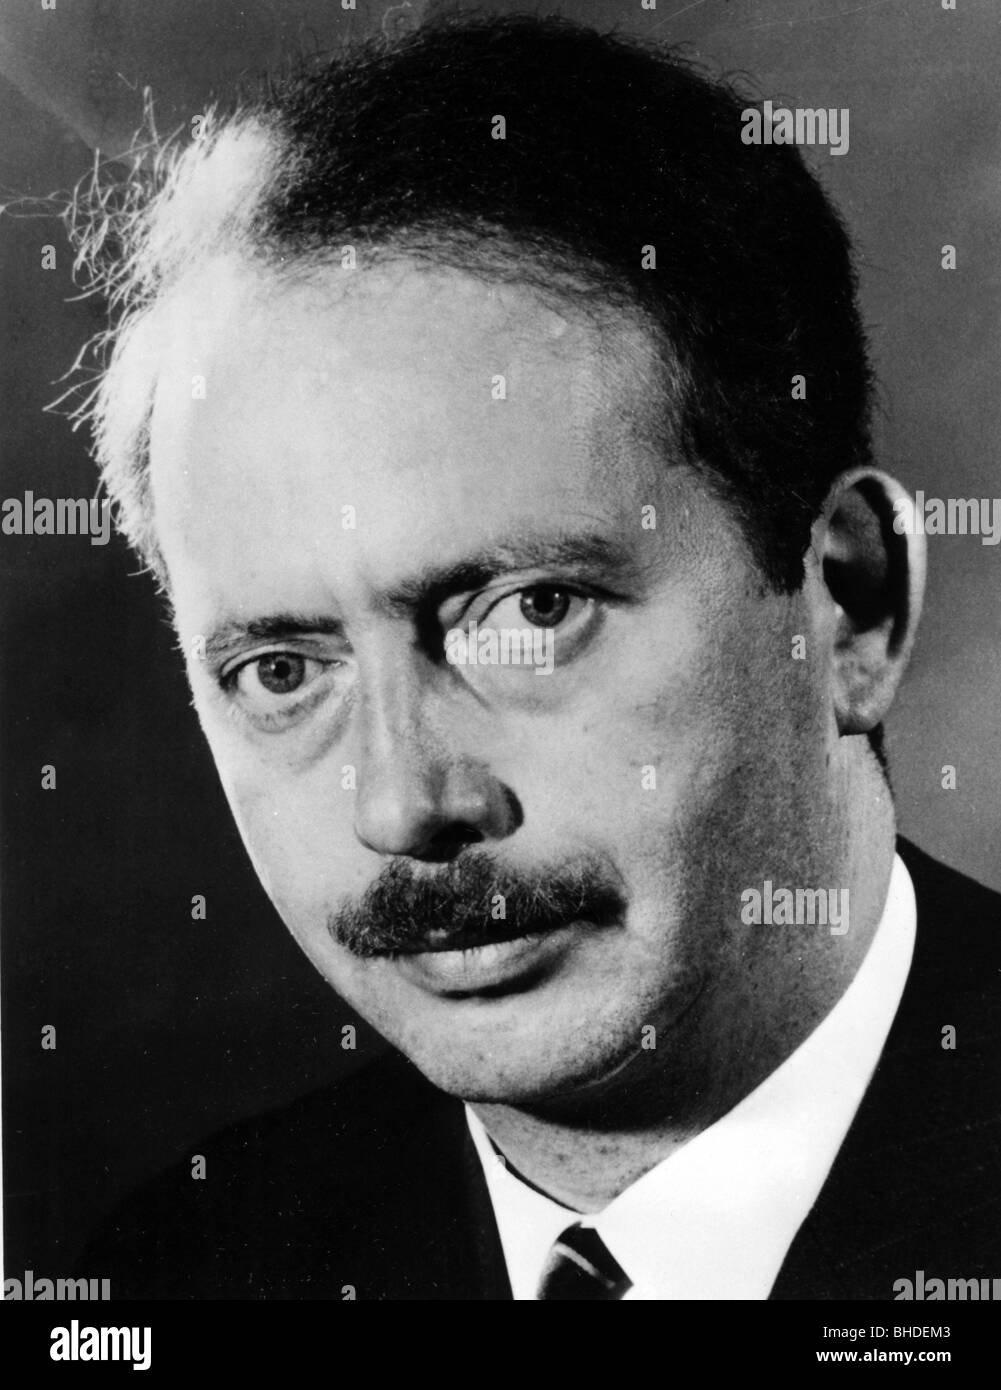 Dahrendorf, Ralf, 1.5.1929 - 17.6.2009, politico tedesco (FDP) e sociologo, ritratto, membro della delegazione della Germania occidentale nella Comunità economica europea, circa 1973, Foto Stock